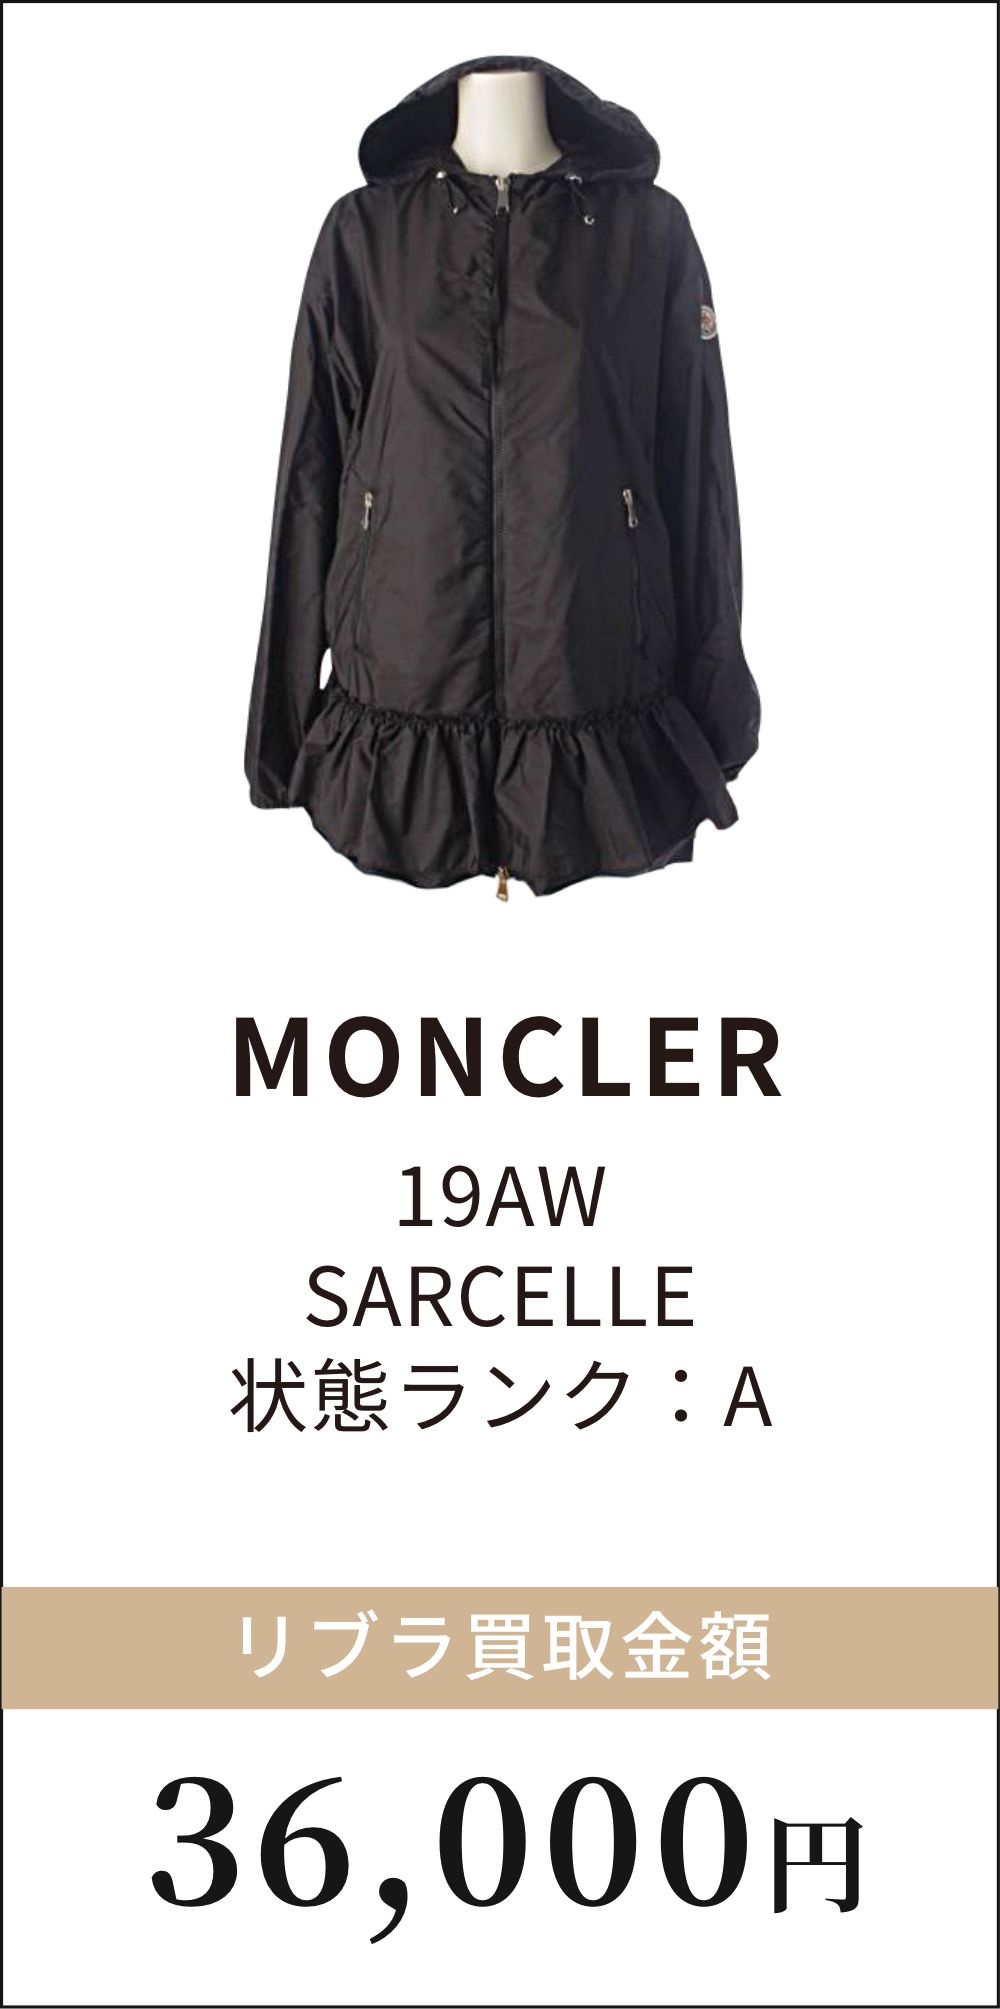 MONCLER 19AW SARCELLE